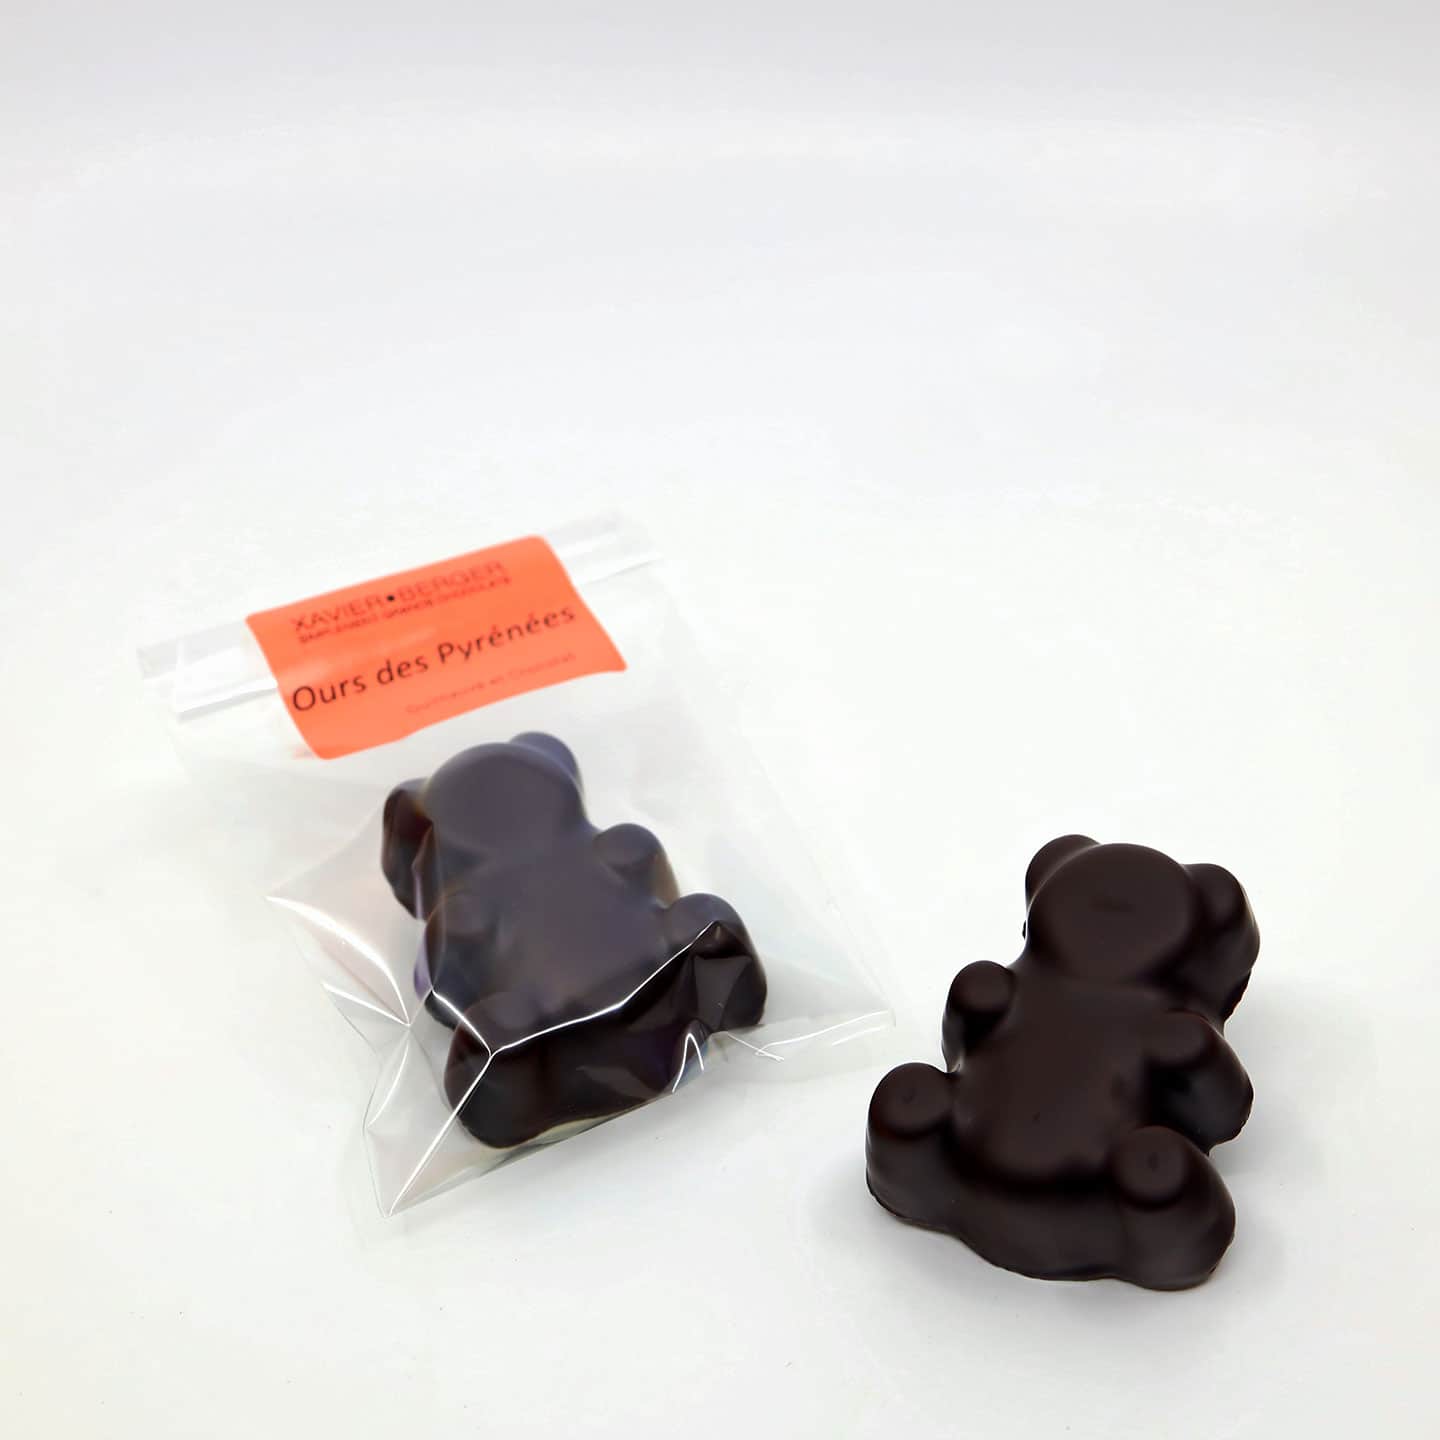 Guimauve enrobée Chocolat Lait 24g - 1 pièce Ours des Pyrénées